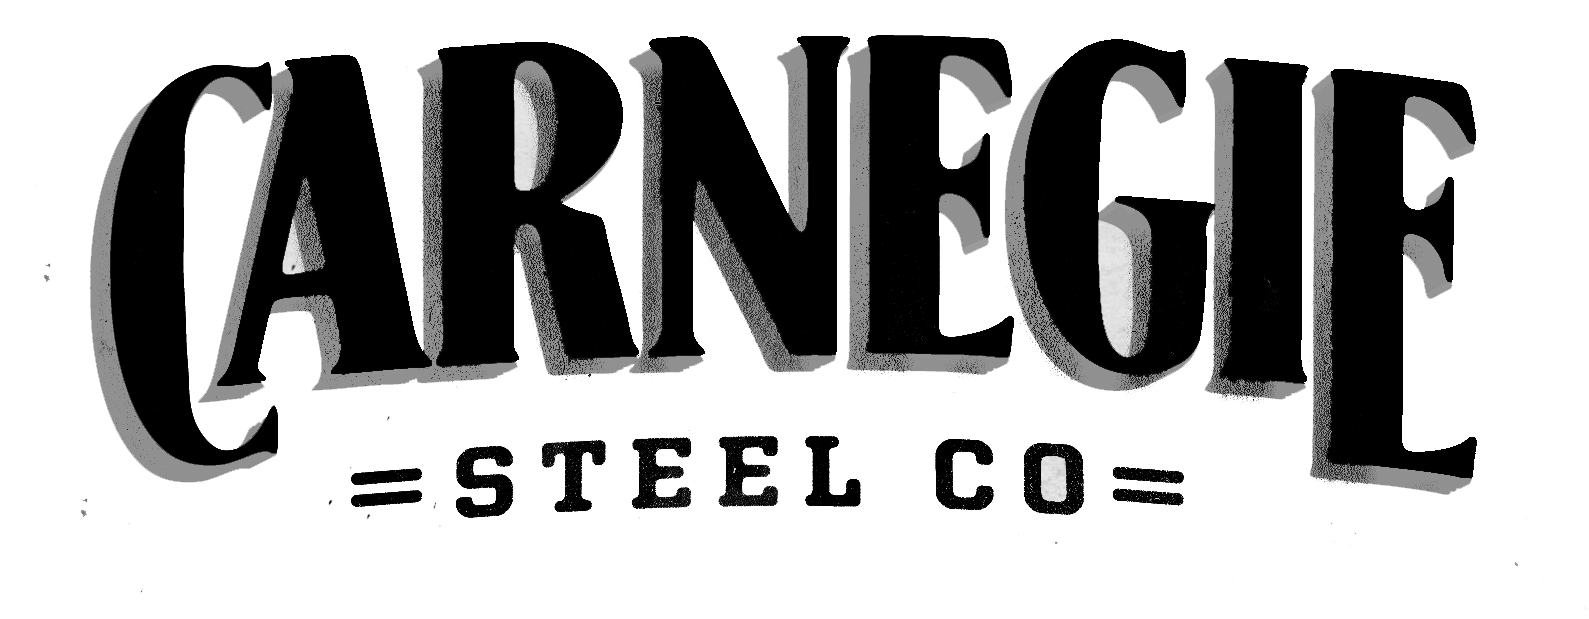 Carnegie Steel Logo - File:Carnegie Steel Co logo.png - Wikimedia Commons